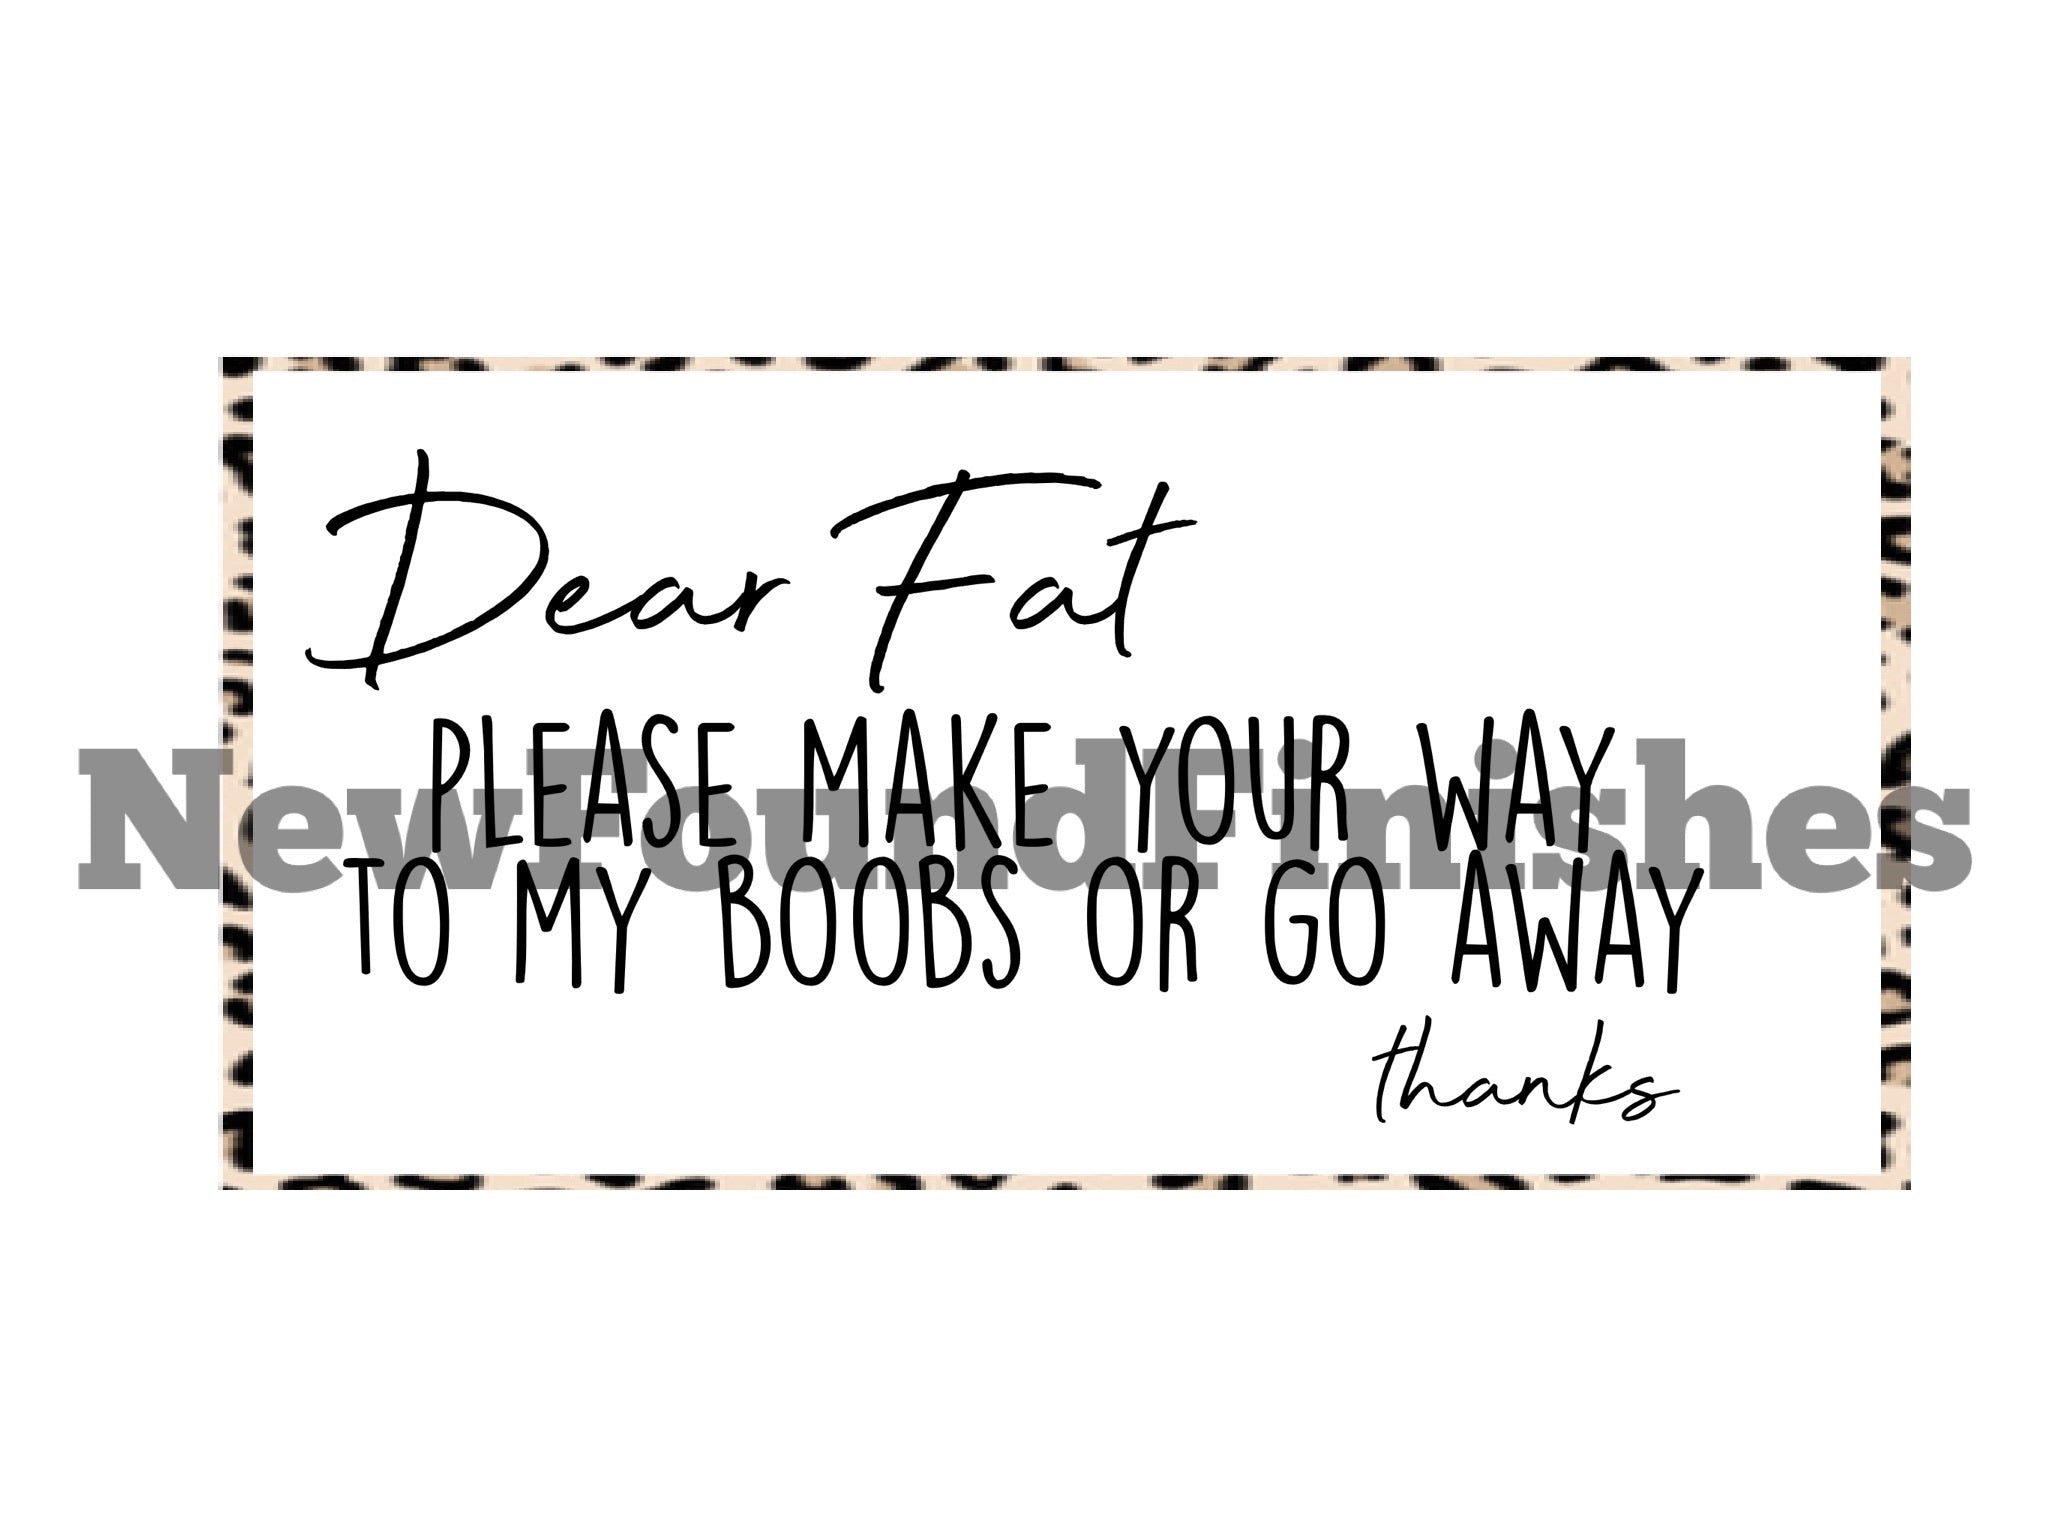 Dear fat